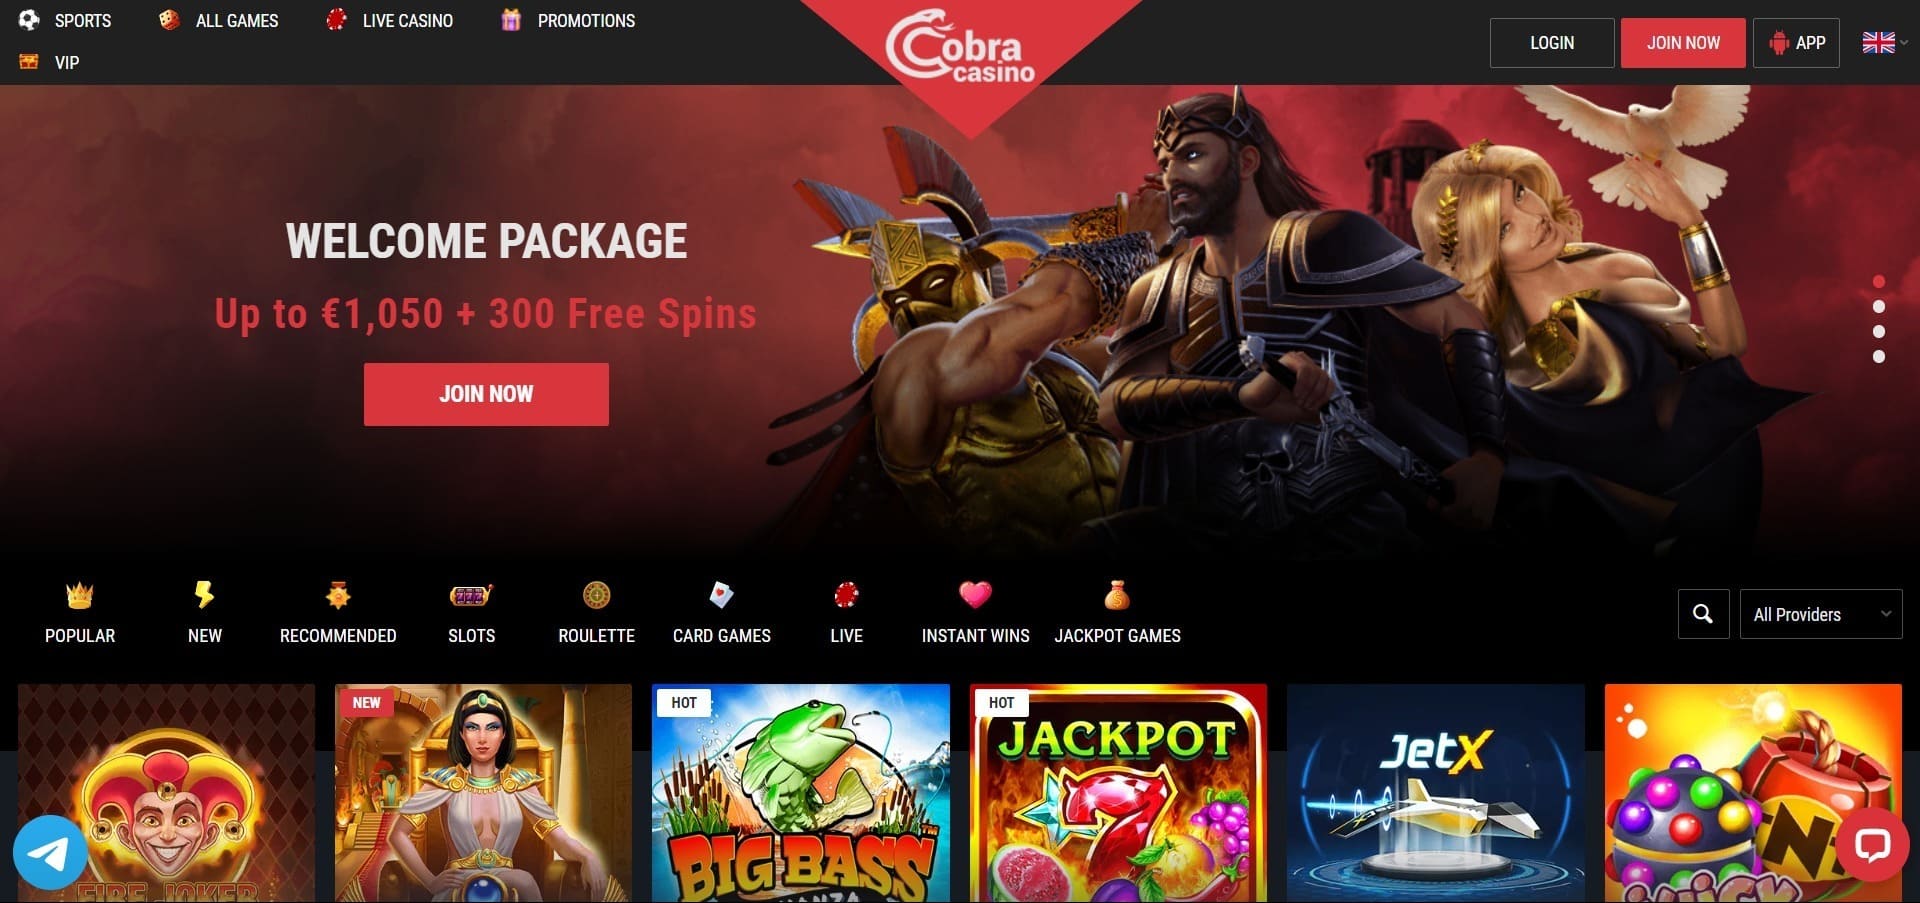 Επίσημος ιστότοπος της Cobra casino